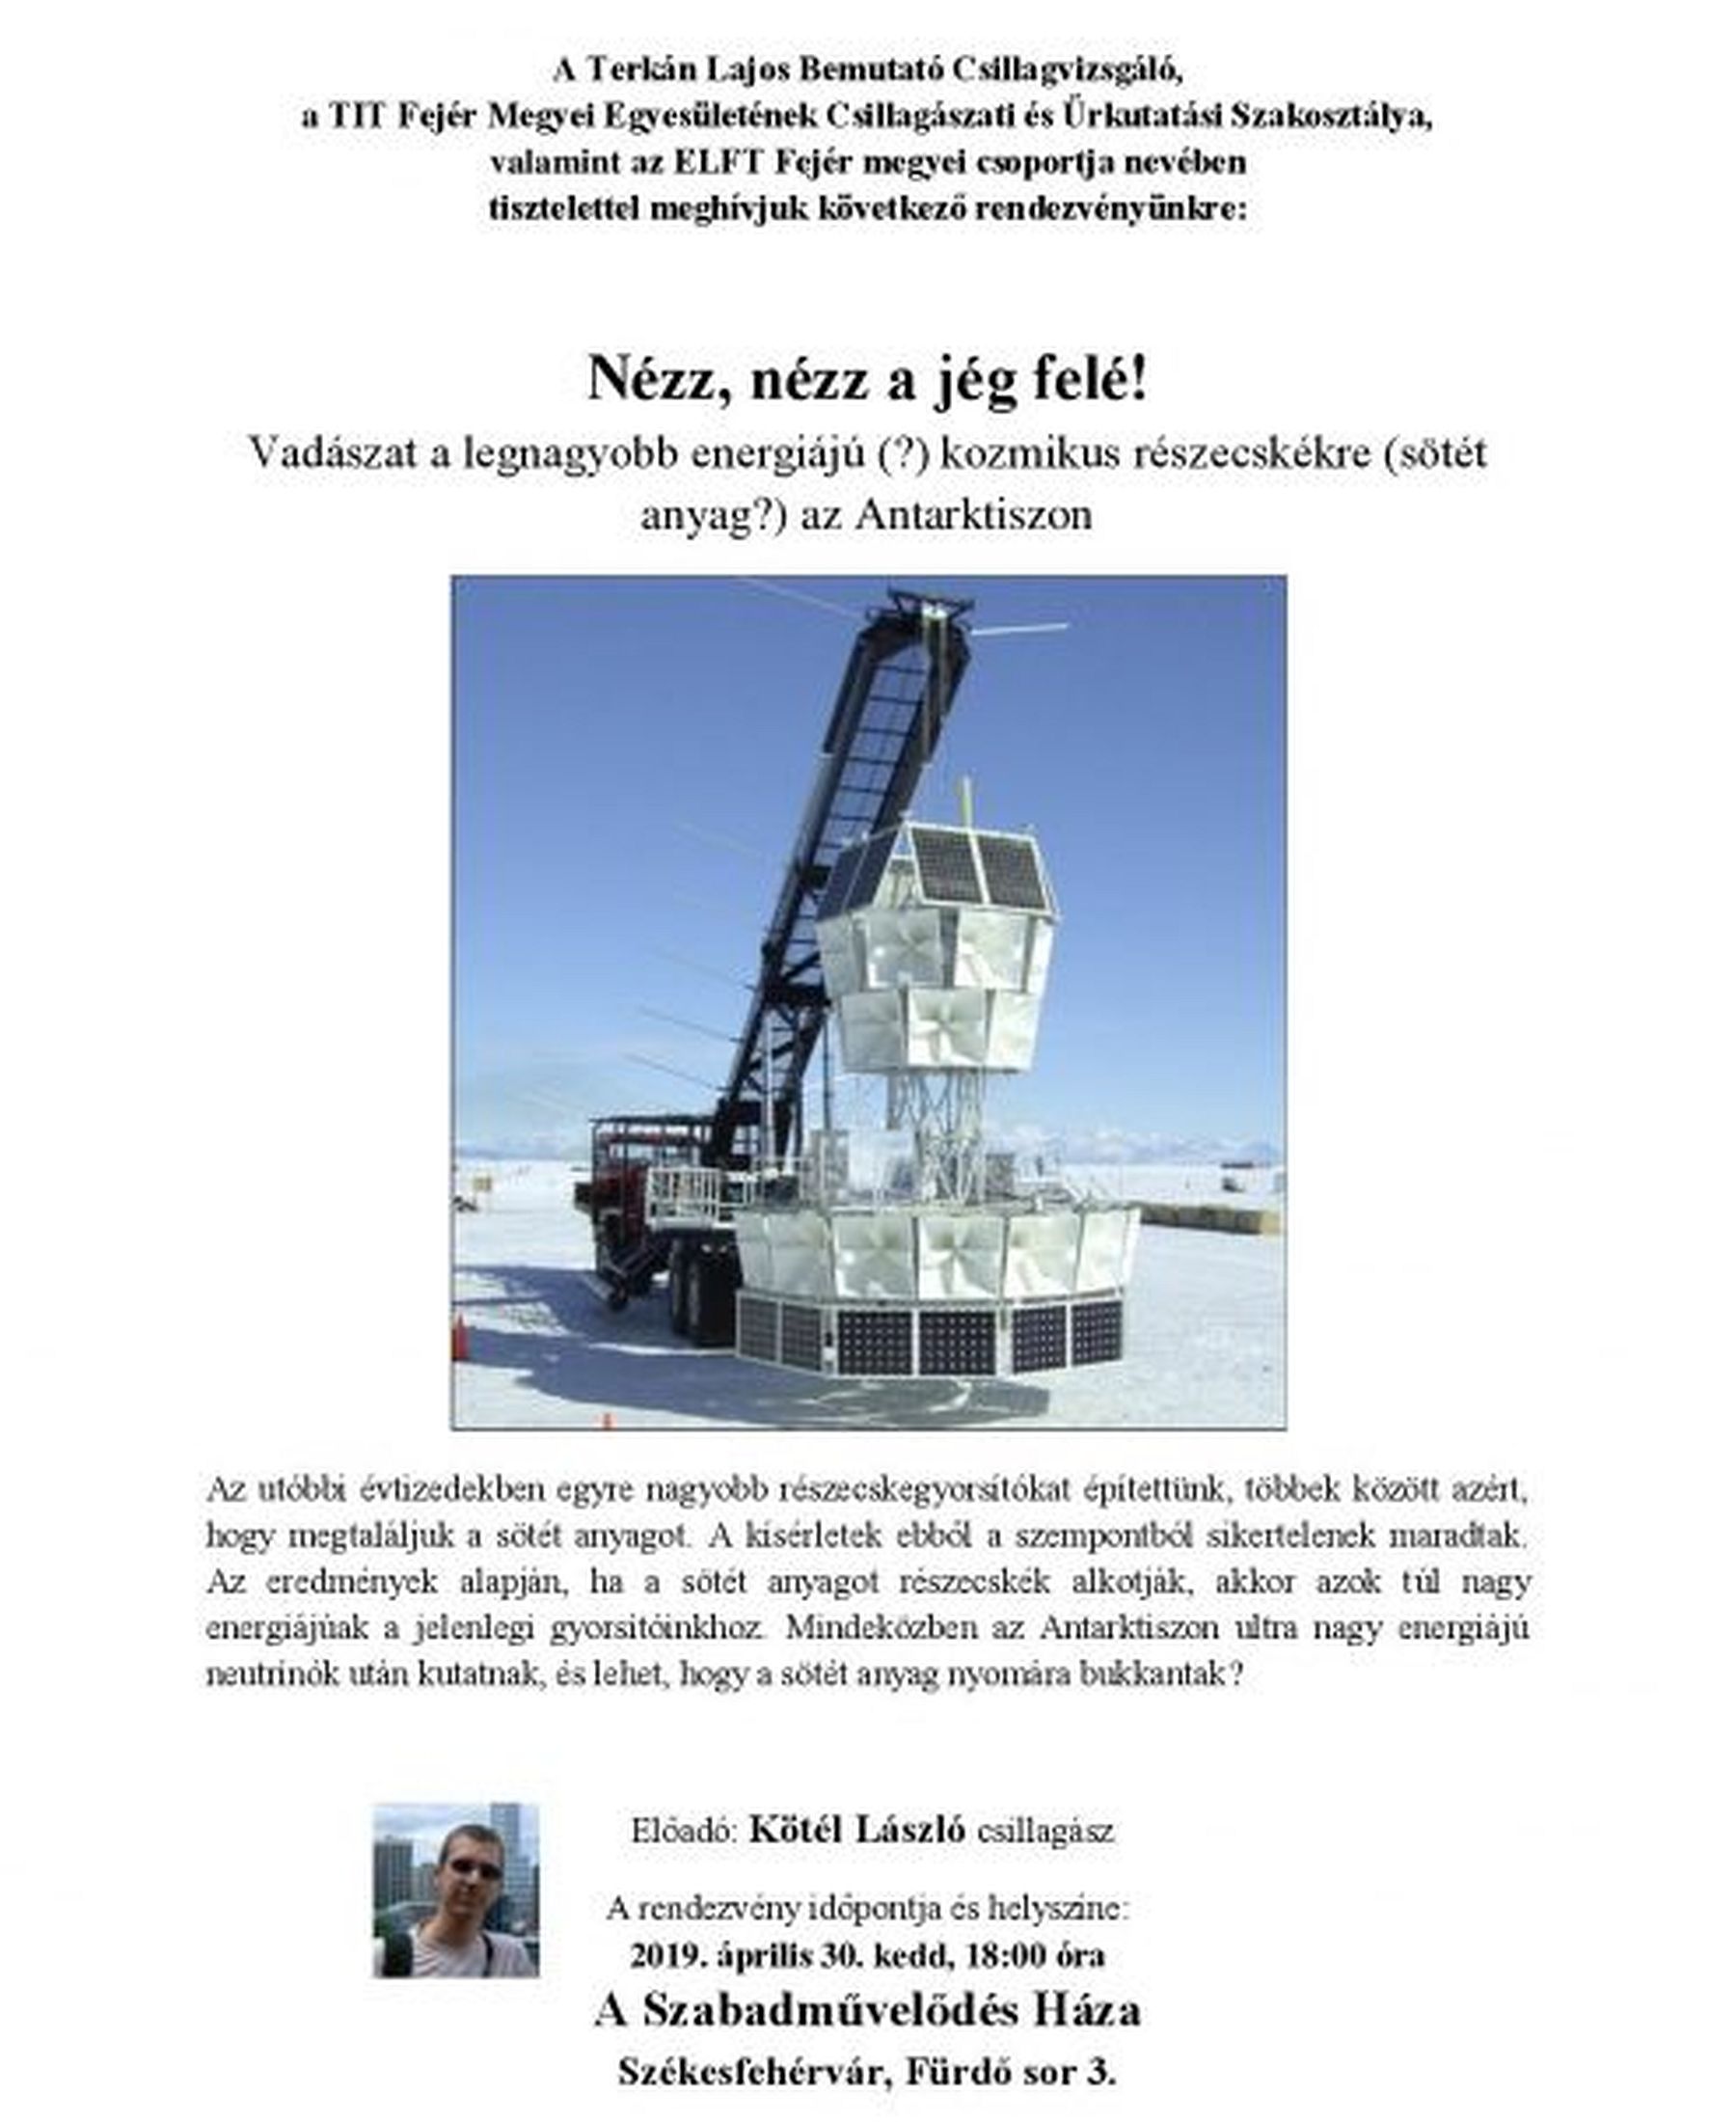 „Nézz, nézz a jég felé!” - Kötél László, csillagász előadása A Szabadművelődés Házában